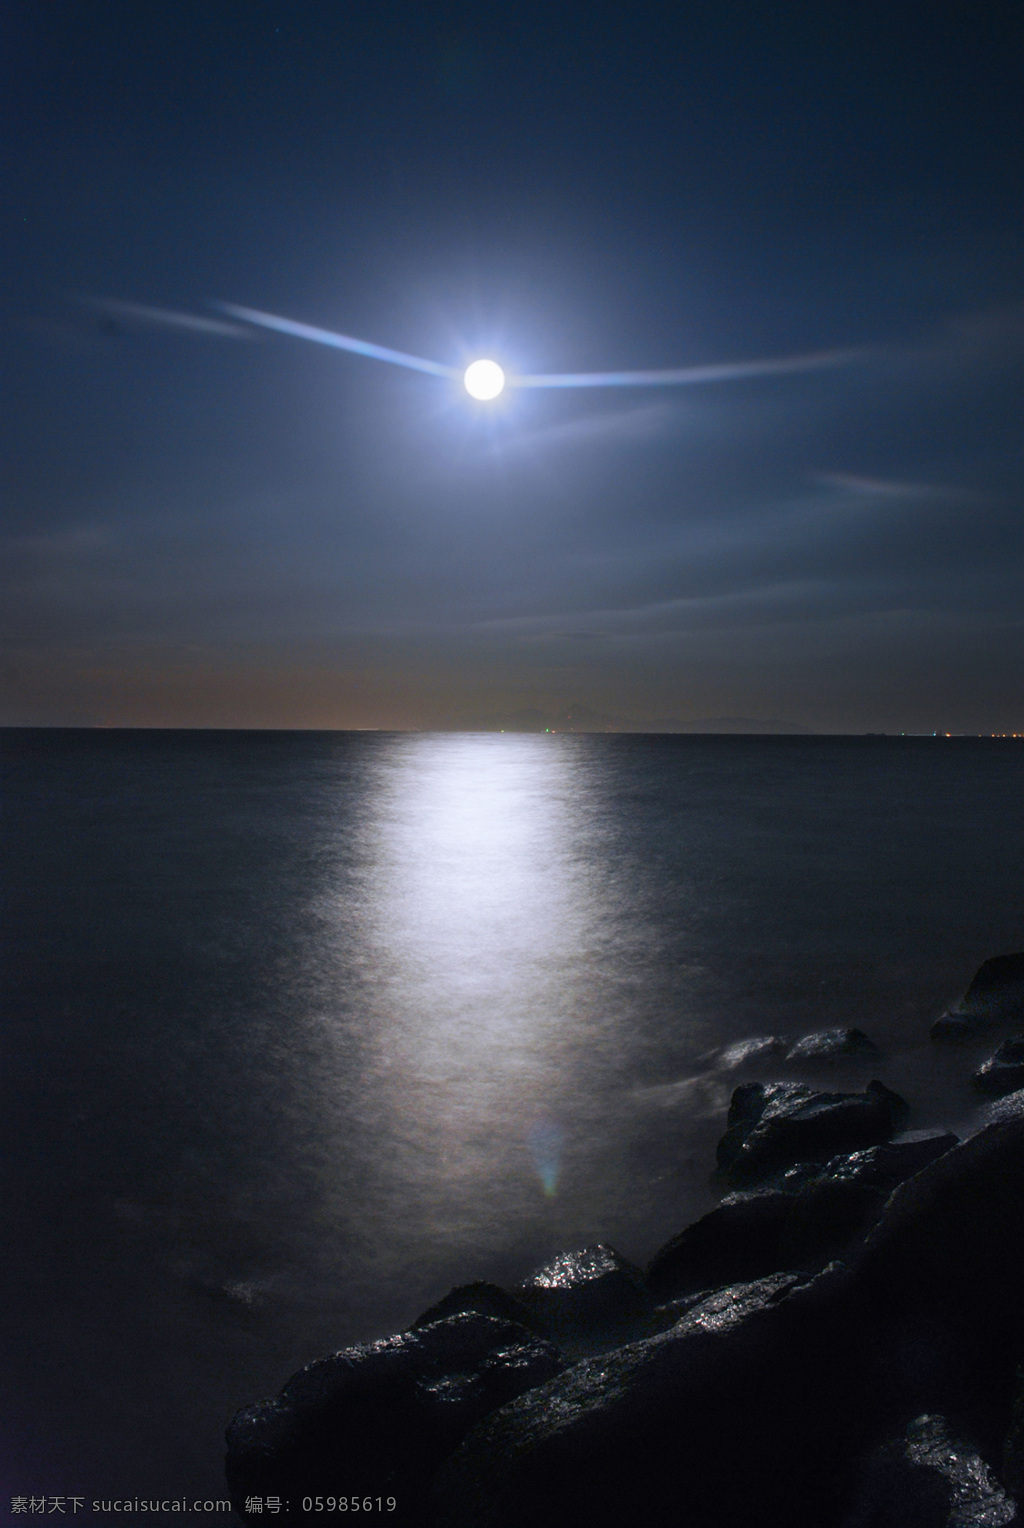 月亮 中秋月亮 夜空 圆月 大海 海边赏月 闪亮 皎洁月光 皓月当空 自然景色 自然景观 自然风景